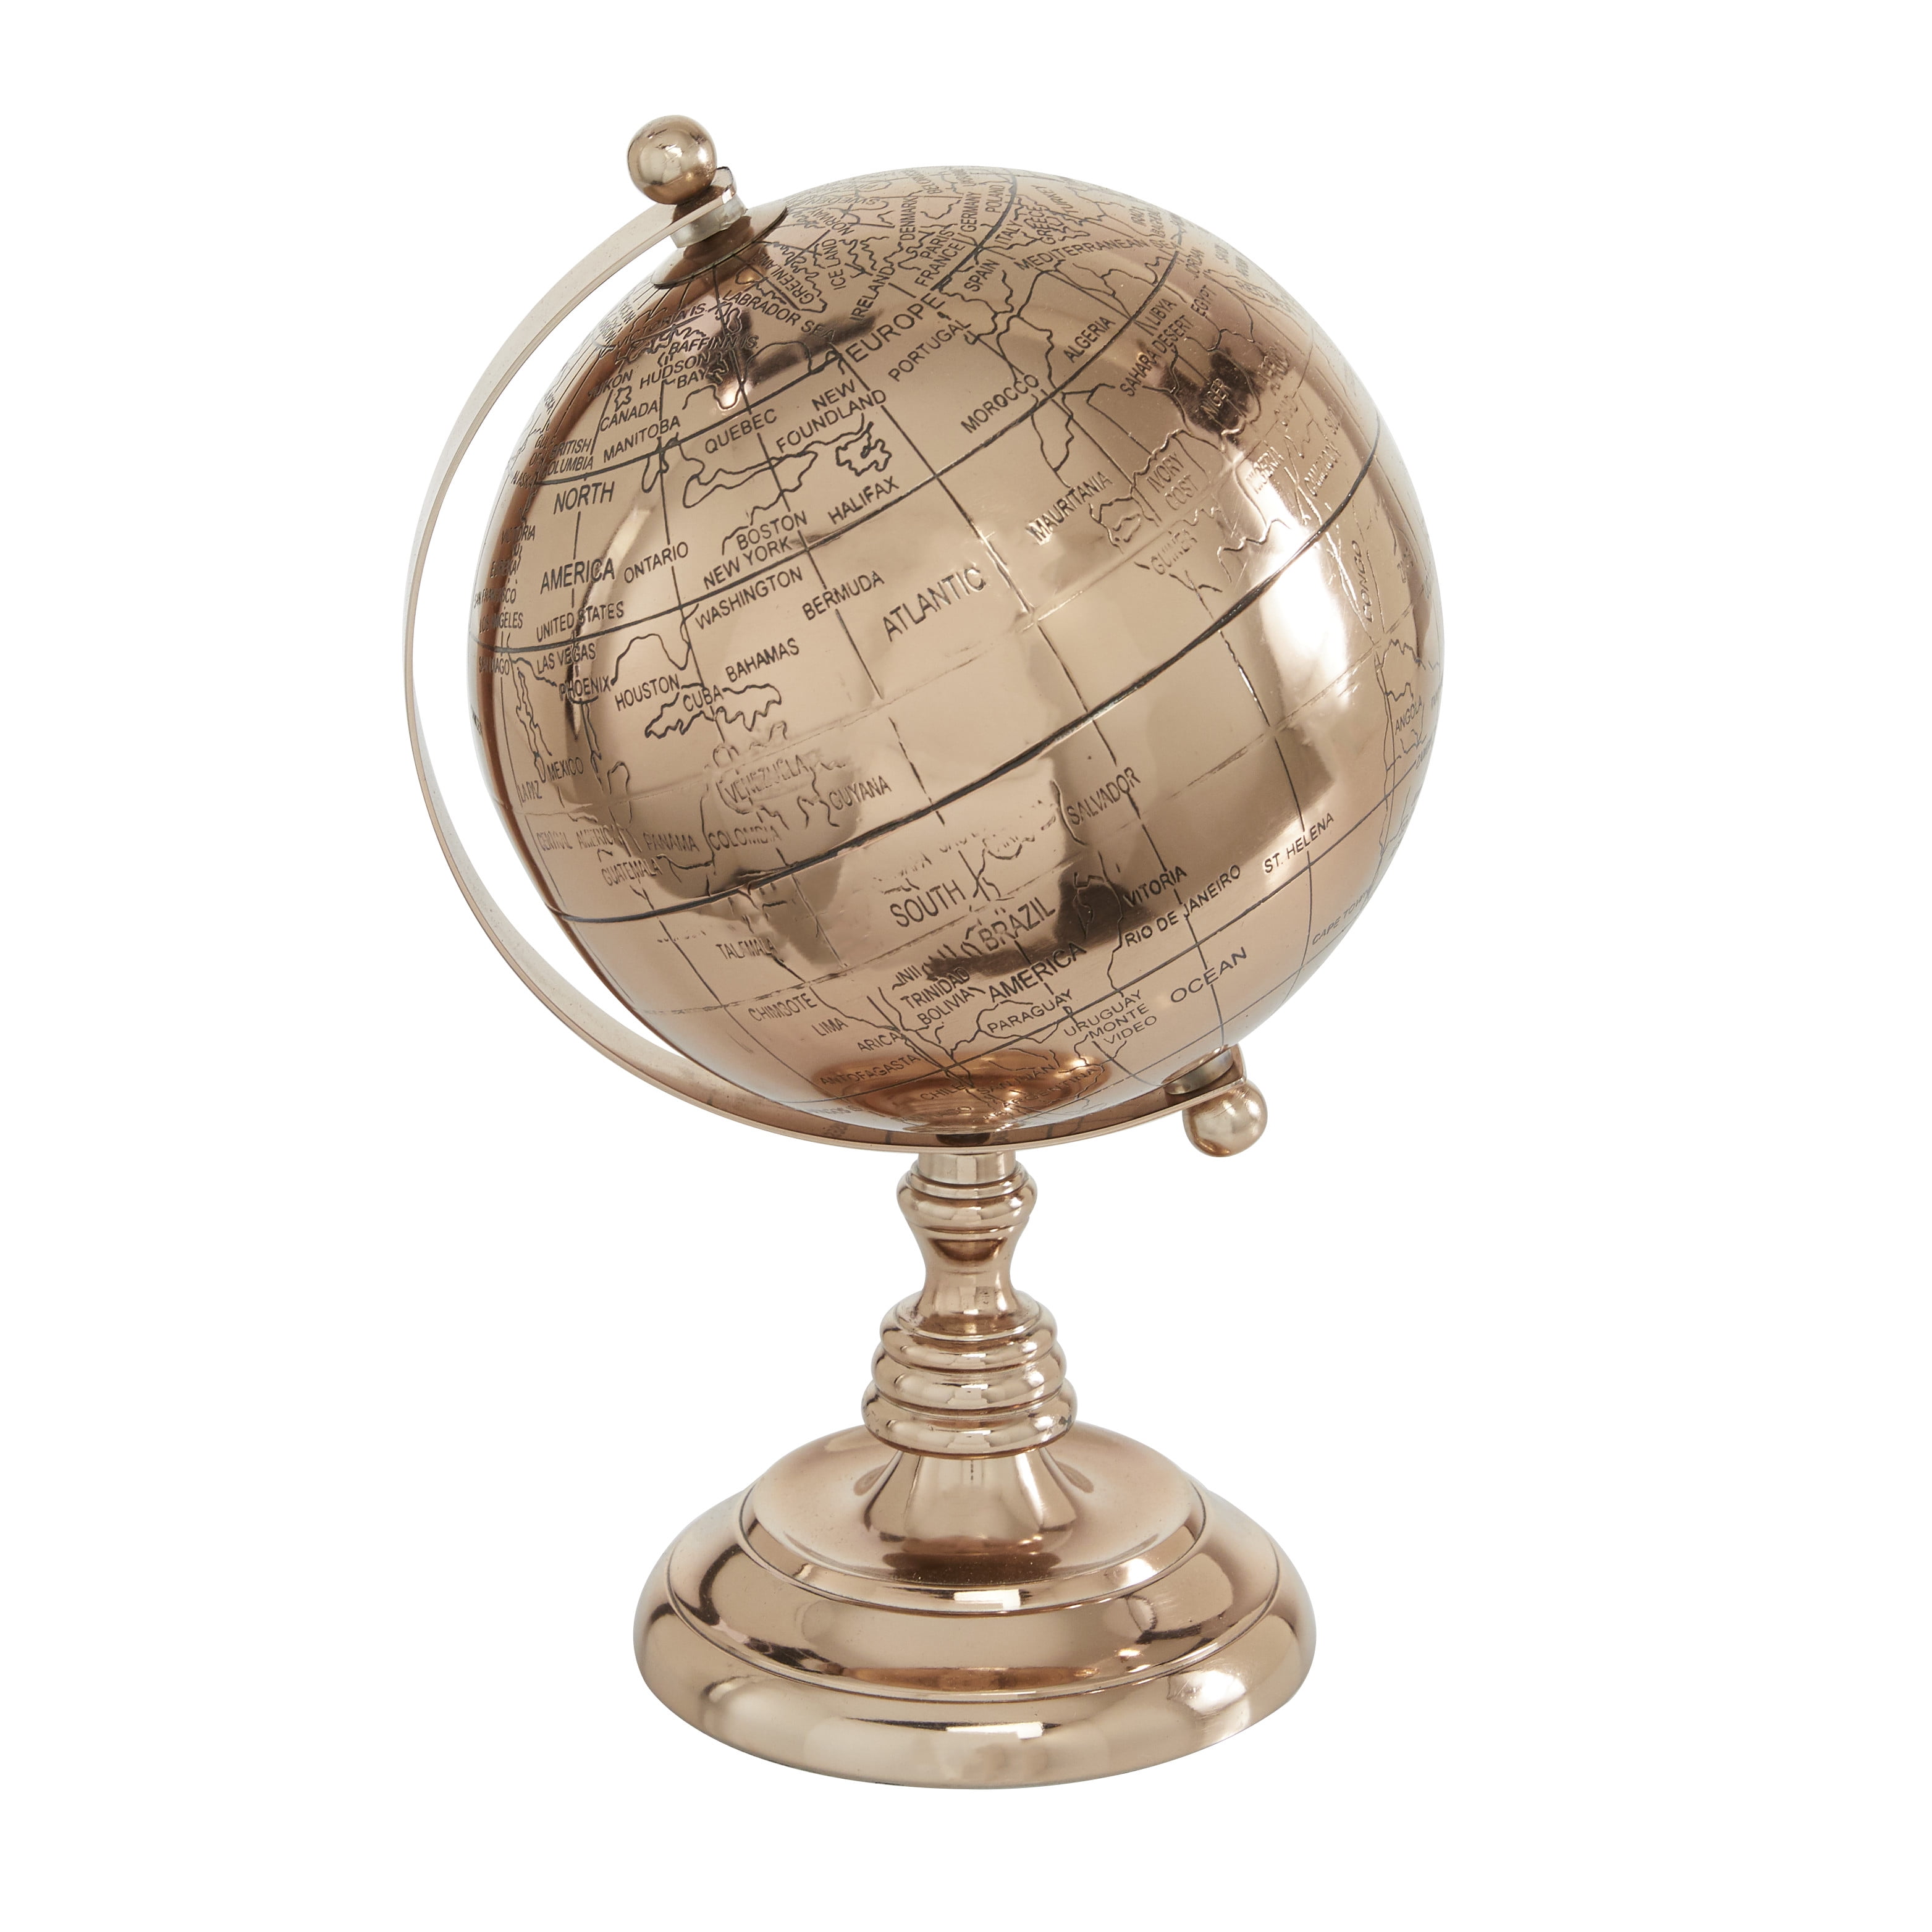 Fred Flintstone 45mm Water Globe by Westland Gifts 